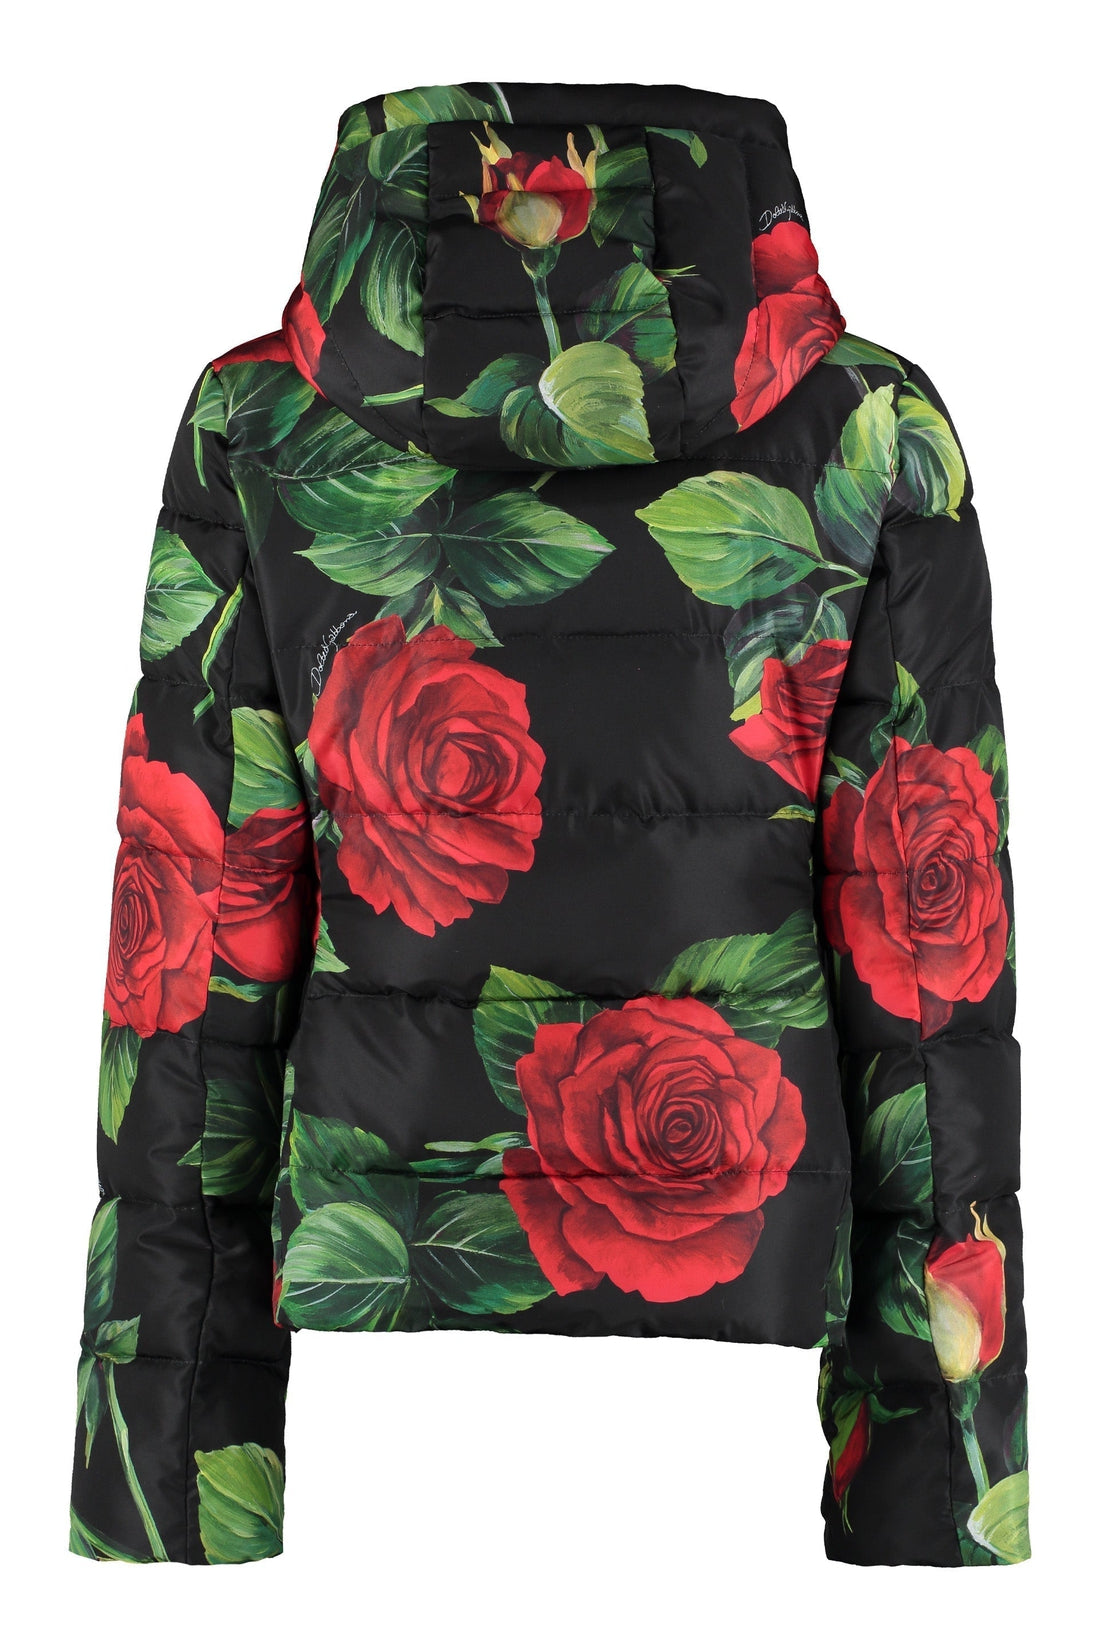 Dolce & Gabbana-OUTLET-SALE-Floral print down jacket-ARCHIVIST